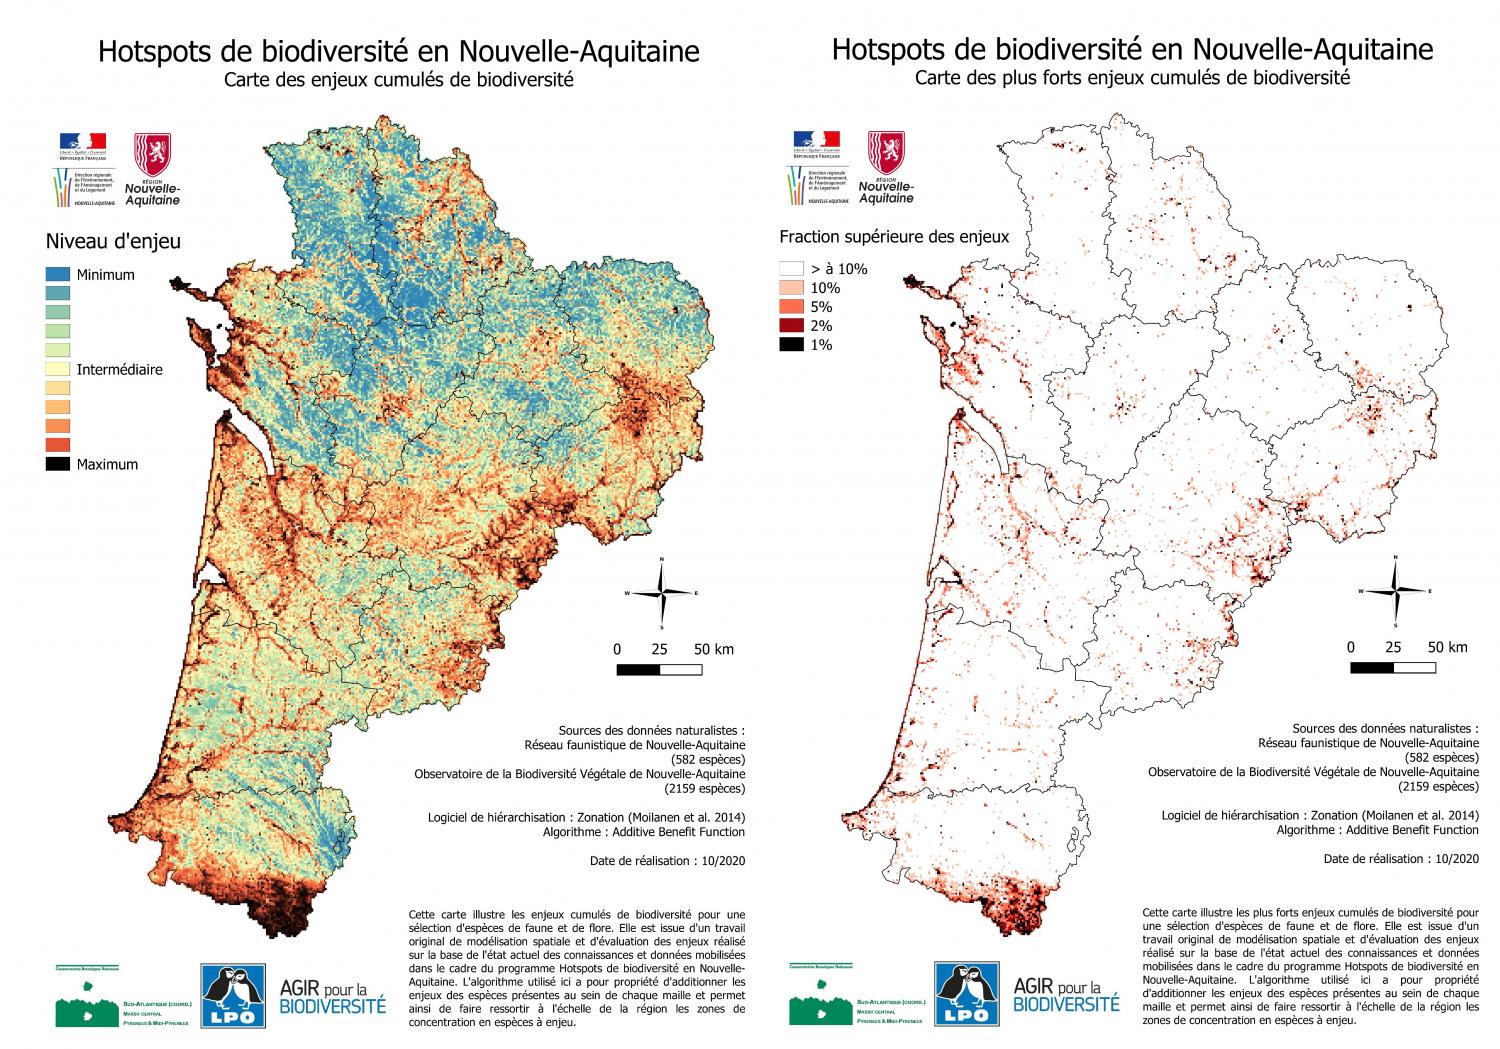 Cartographie des hotspots de biodiversité et des lacunes de protection en Nouvelle-Aquitaine